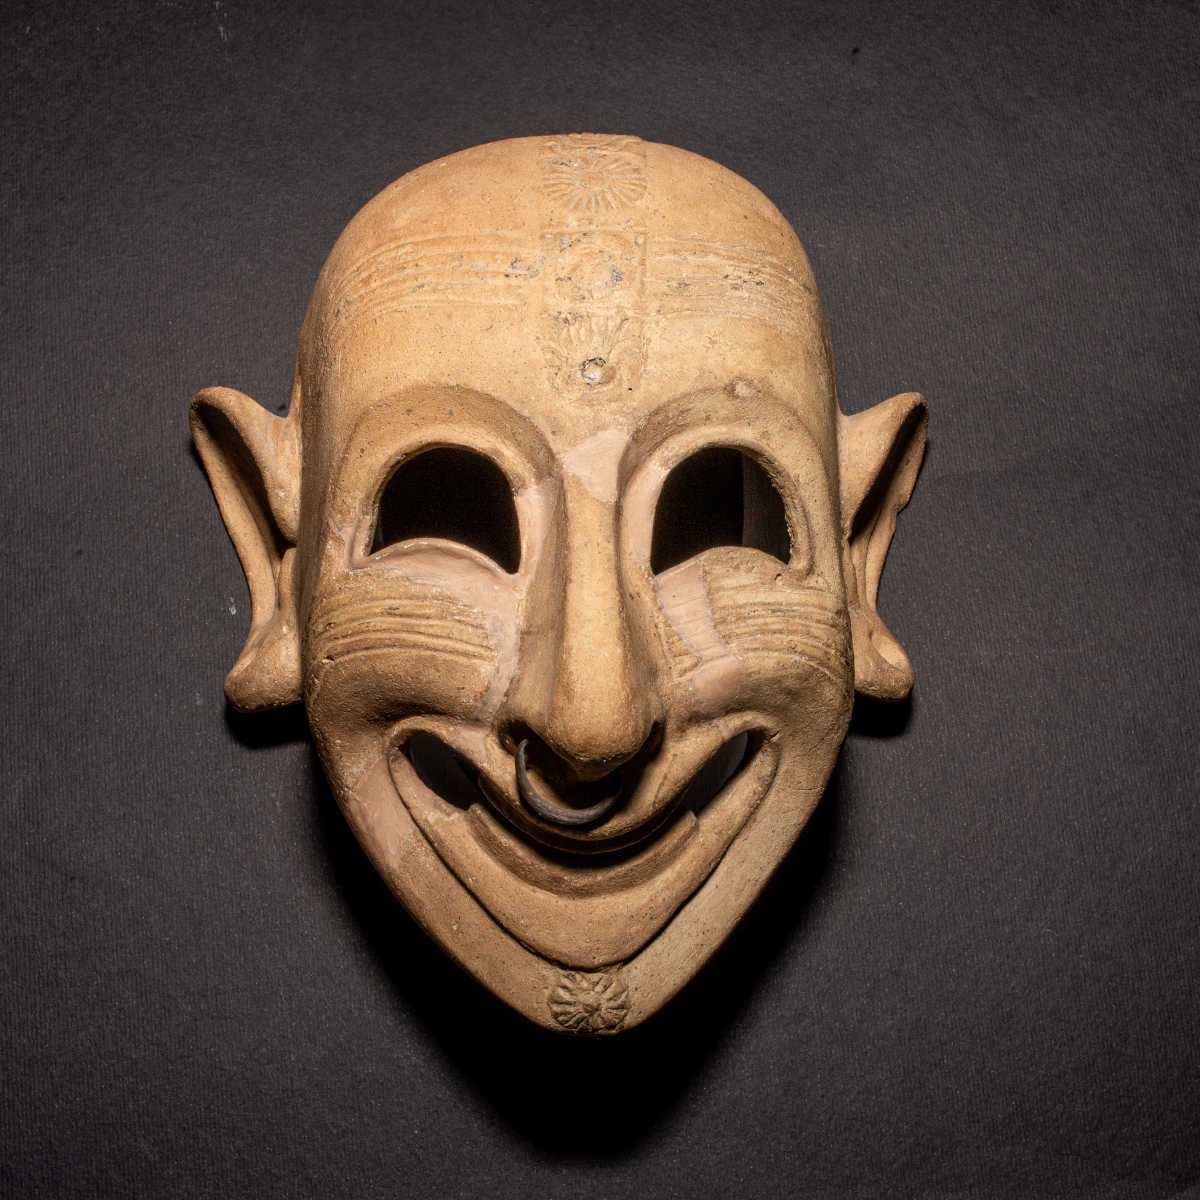 Cagliari, Museo Archeologico Nazionale, maschera ghignante - San Sperate - "MiC - Museo Archeologico Nazionale di Cagliari"